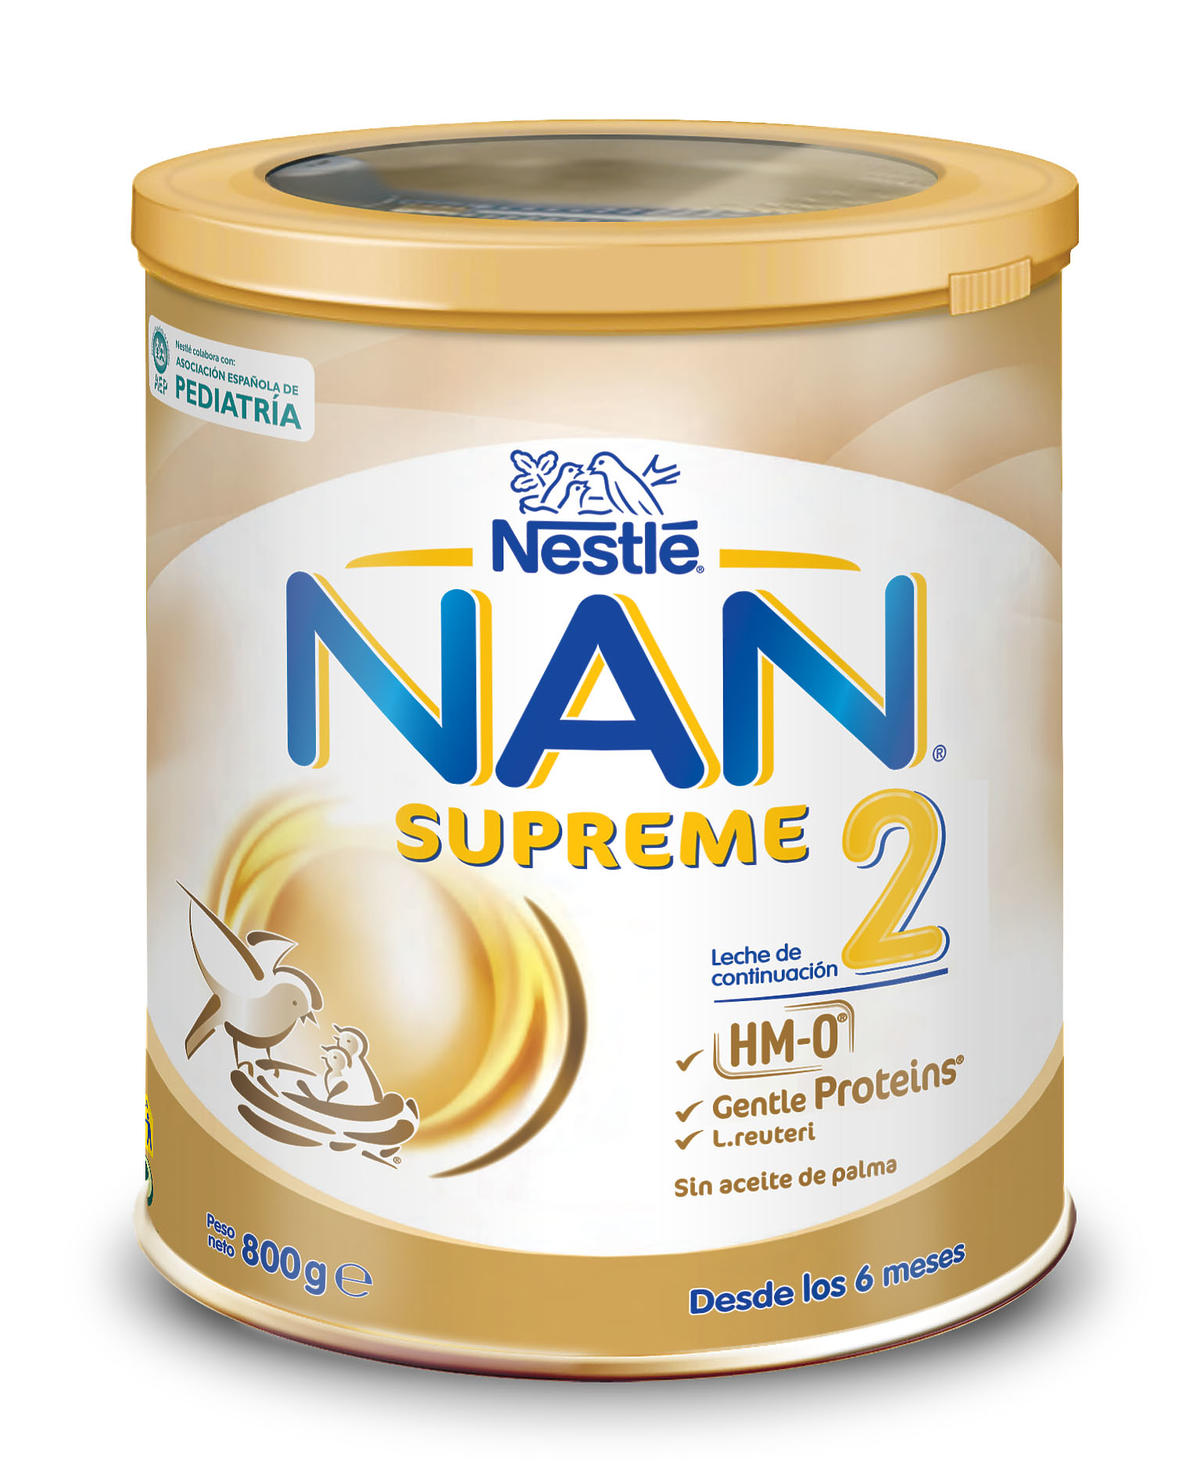 Nestle nan supreme